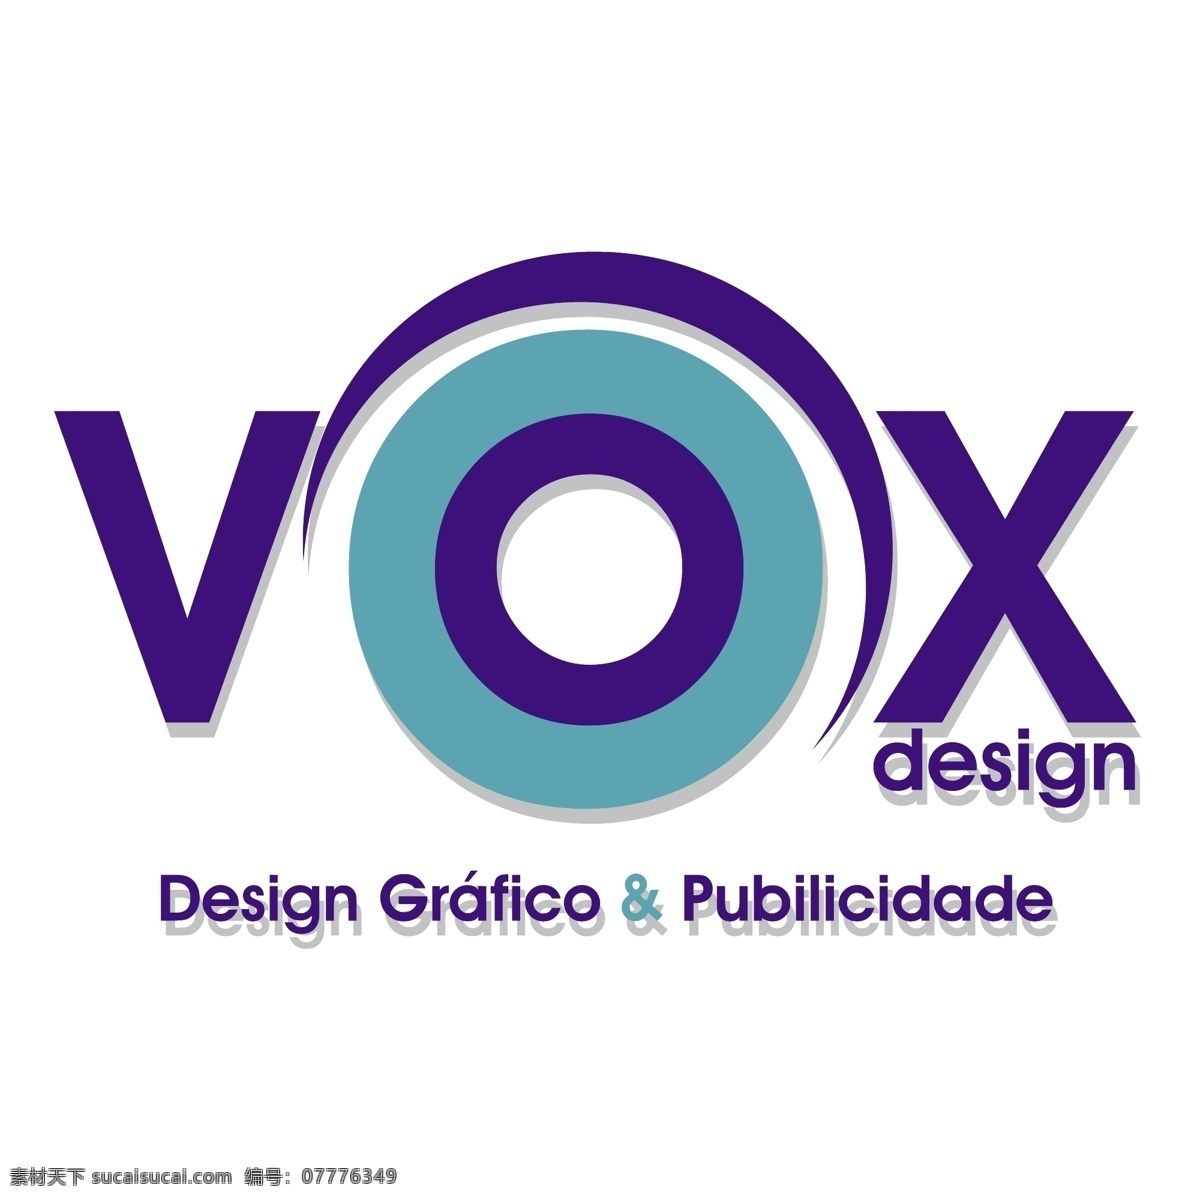 vox 功能 免费 声音 标识 logo psd源文件 logo设计